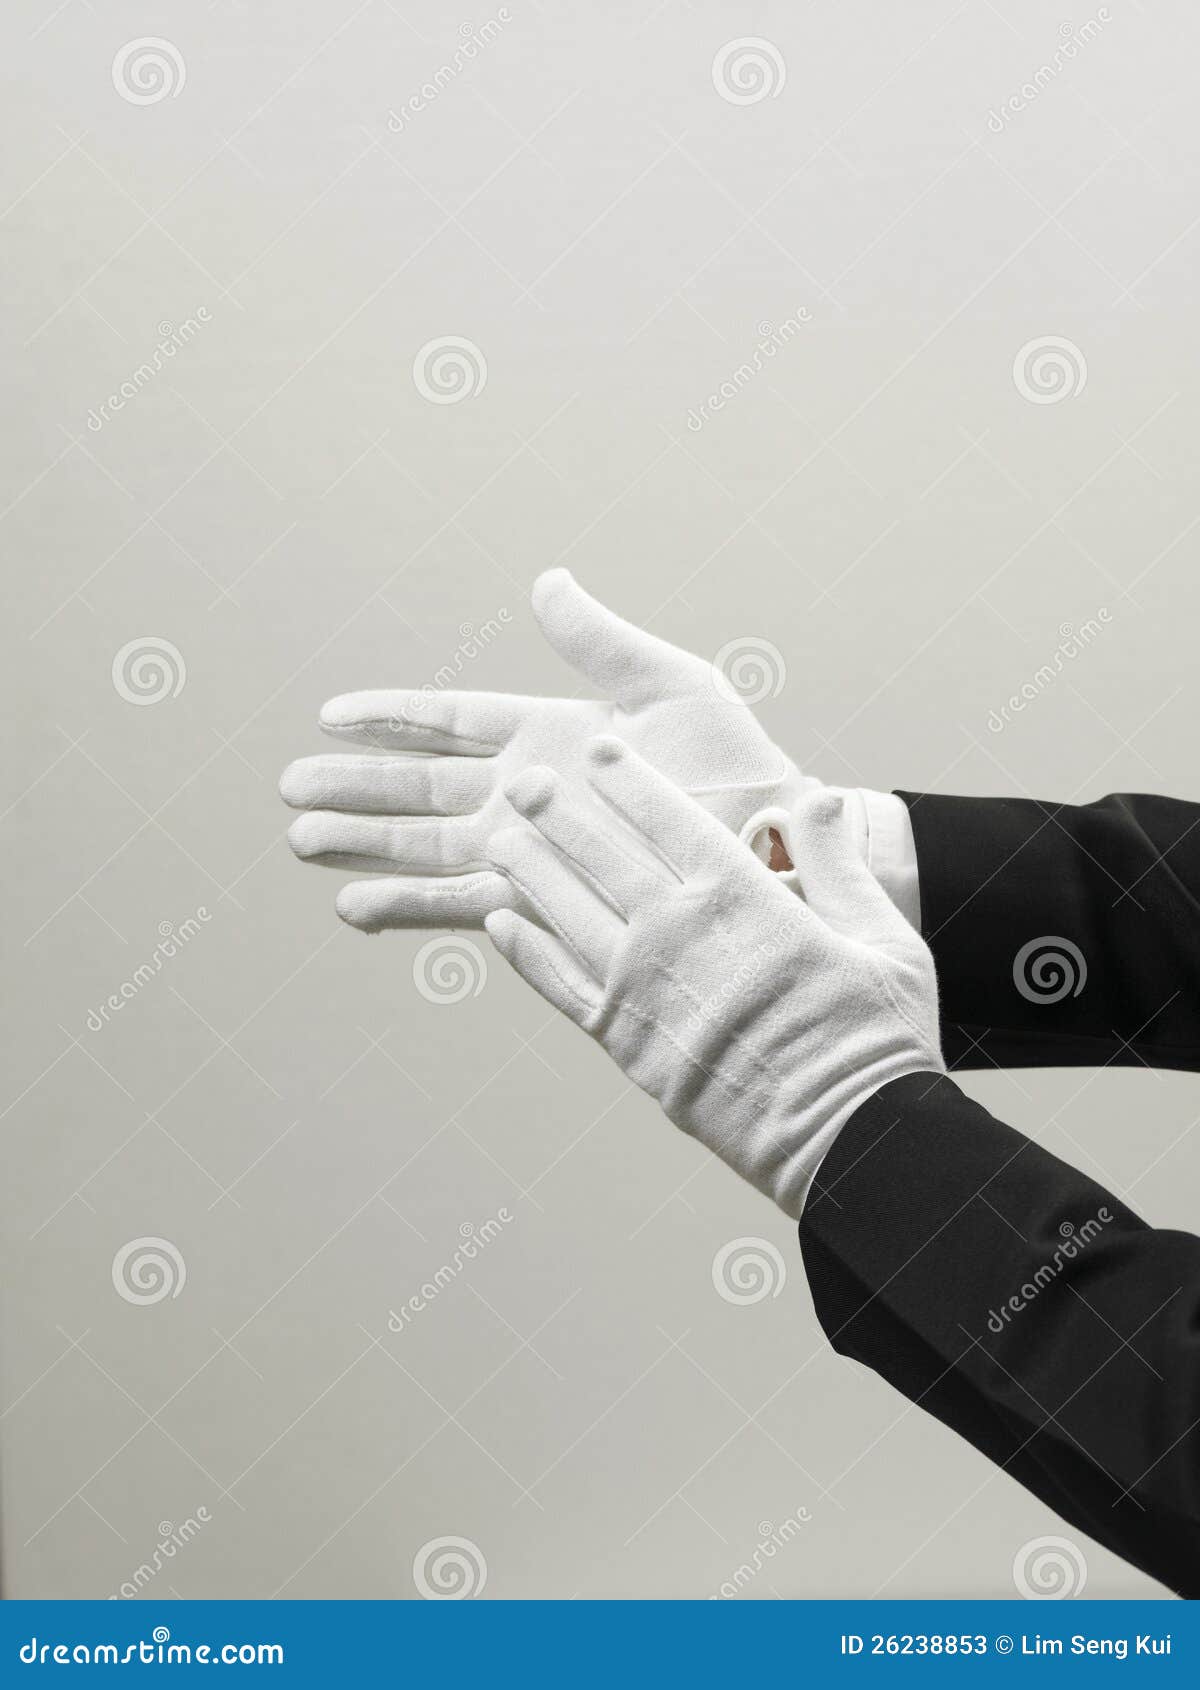 В мешке находятся черные и белые перчатки